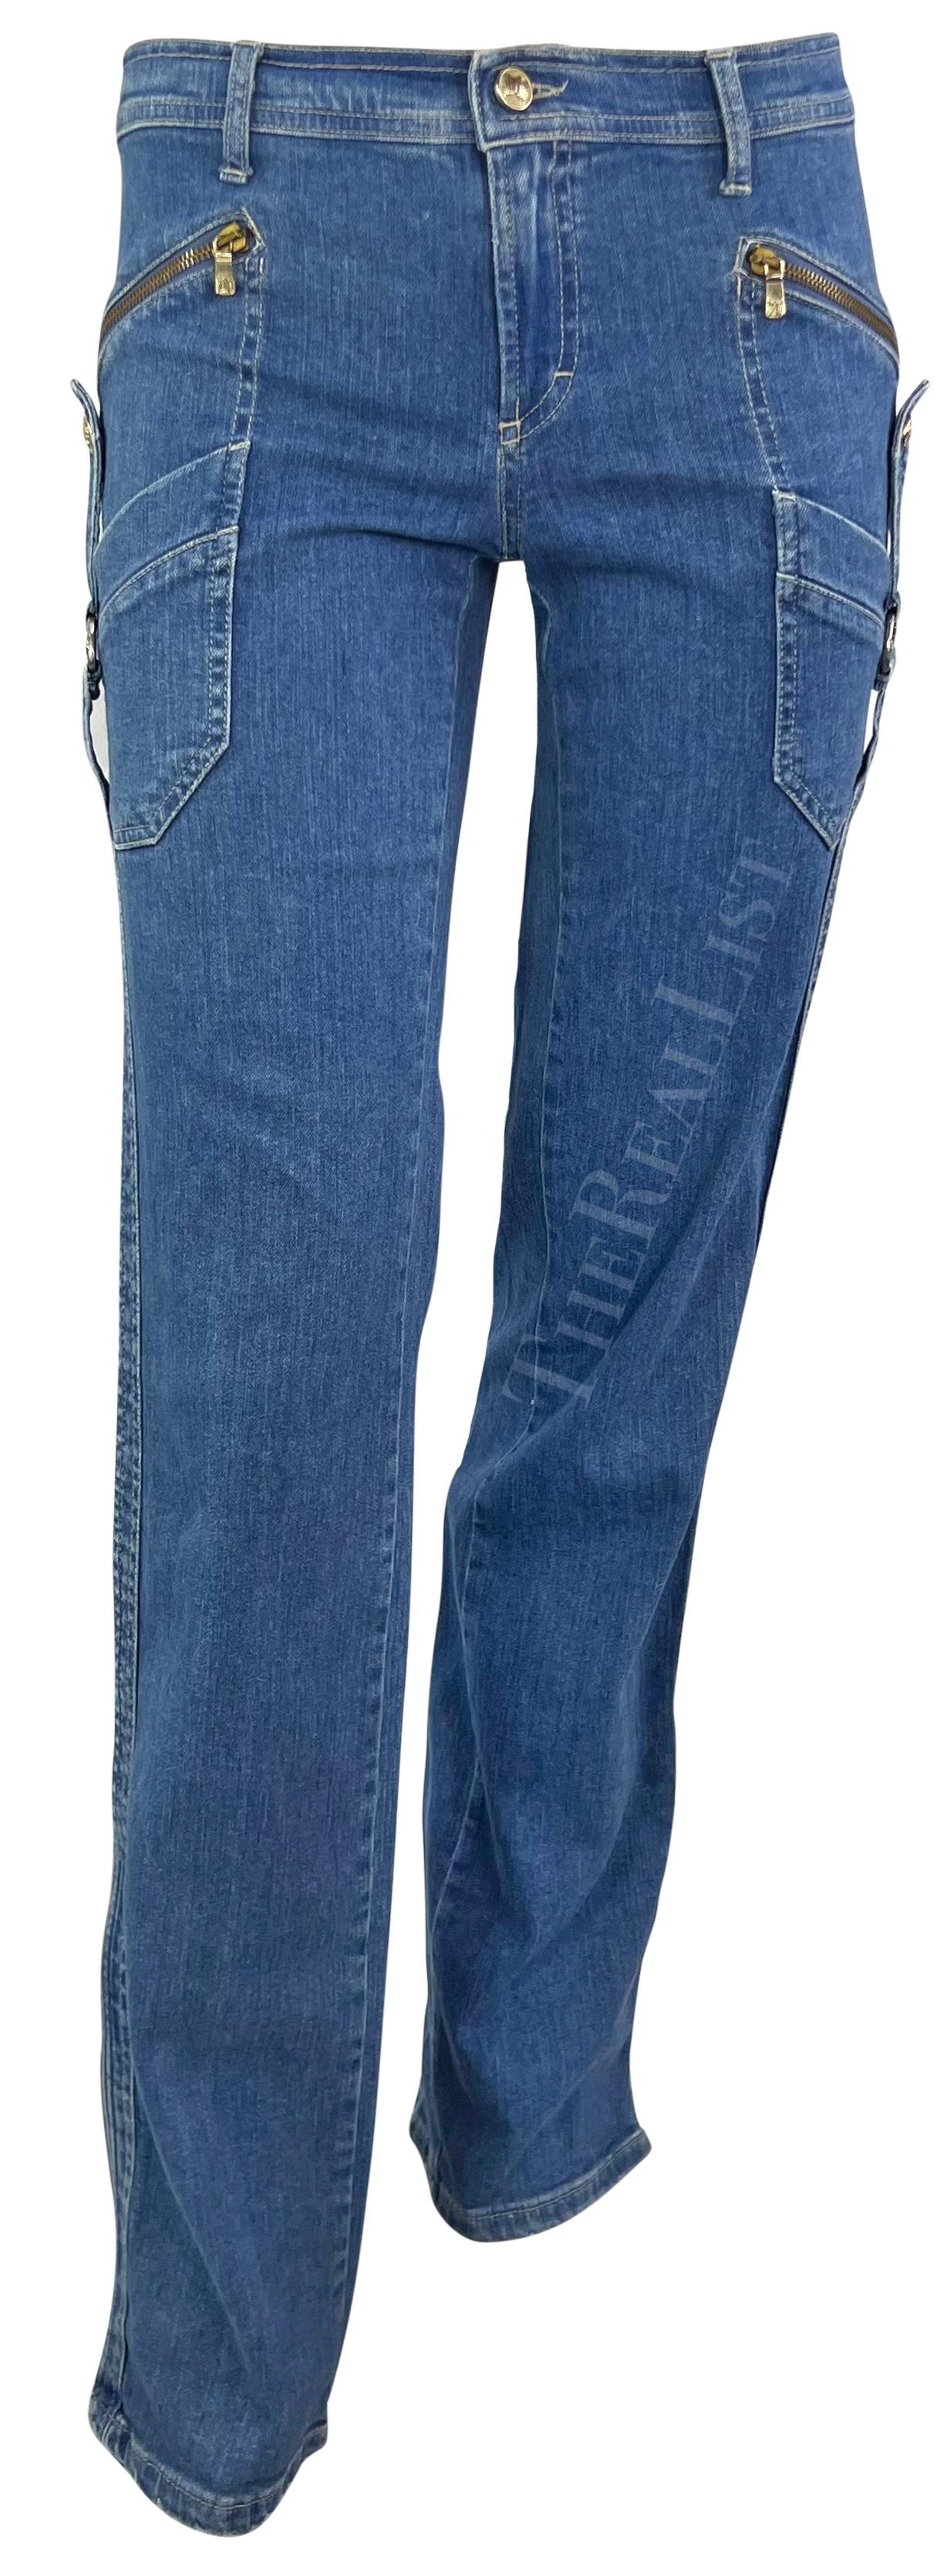 Voici un fabuleux jean Versace délavé, dessiné par Donatella Versace. Datant du début des années 2000, ce jean chic présente une coupe fuselée et un ourlet légèrement évasé. Les jeans sont dotés de grandes poches zippées sur chaque cuisse et